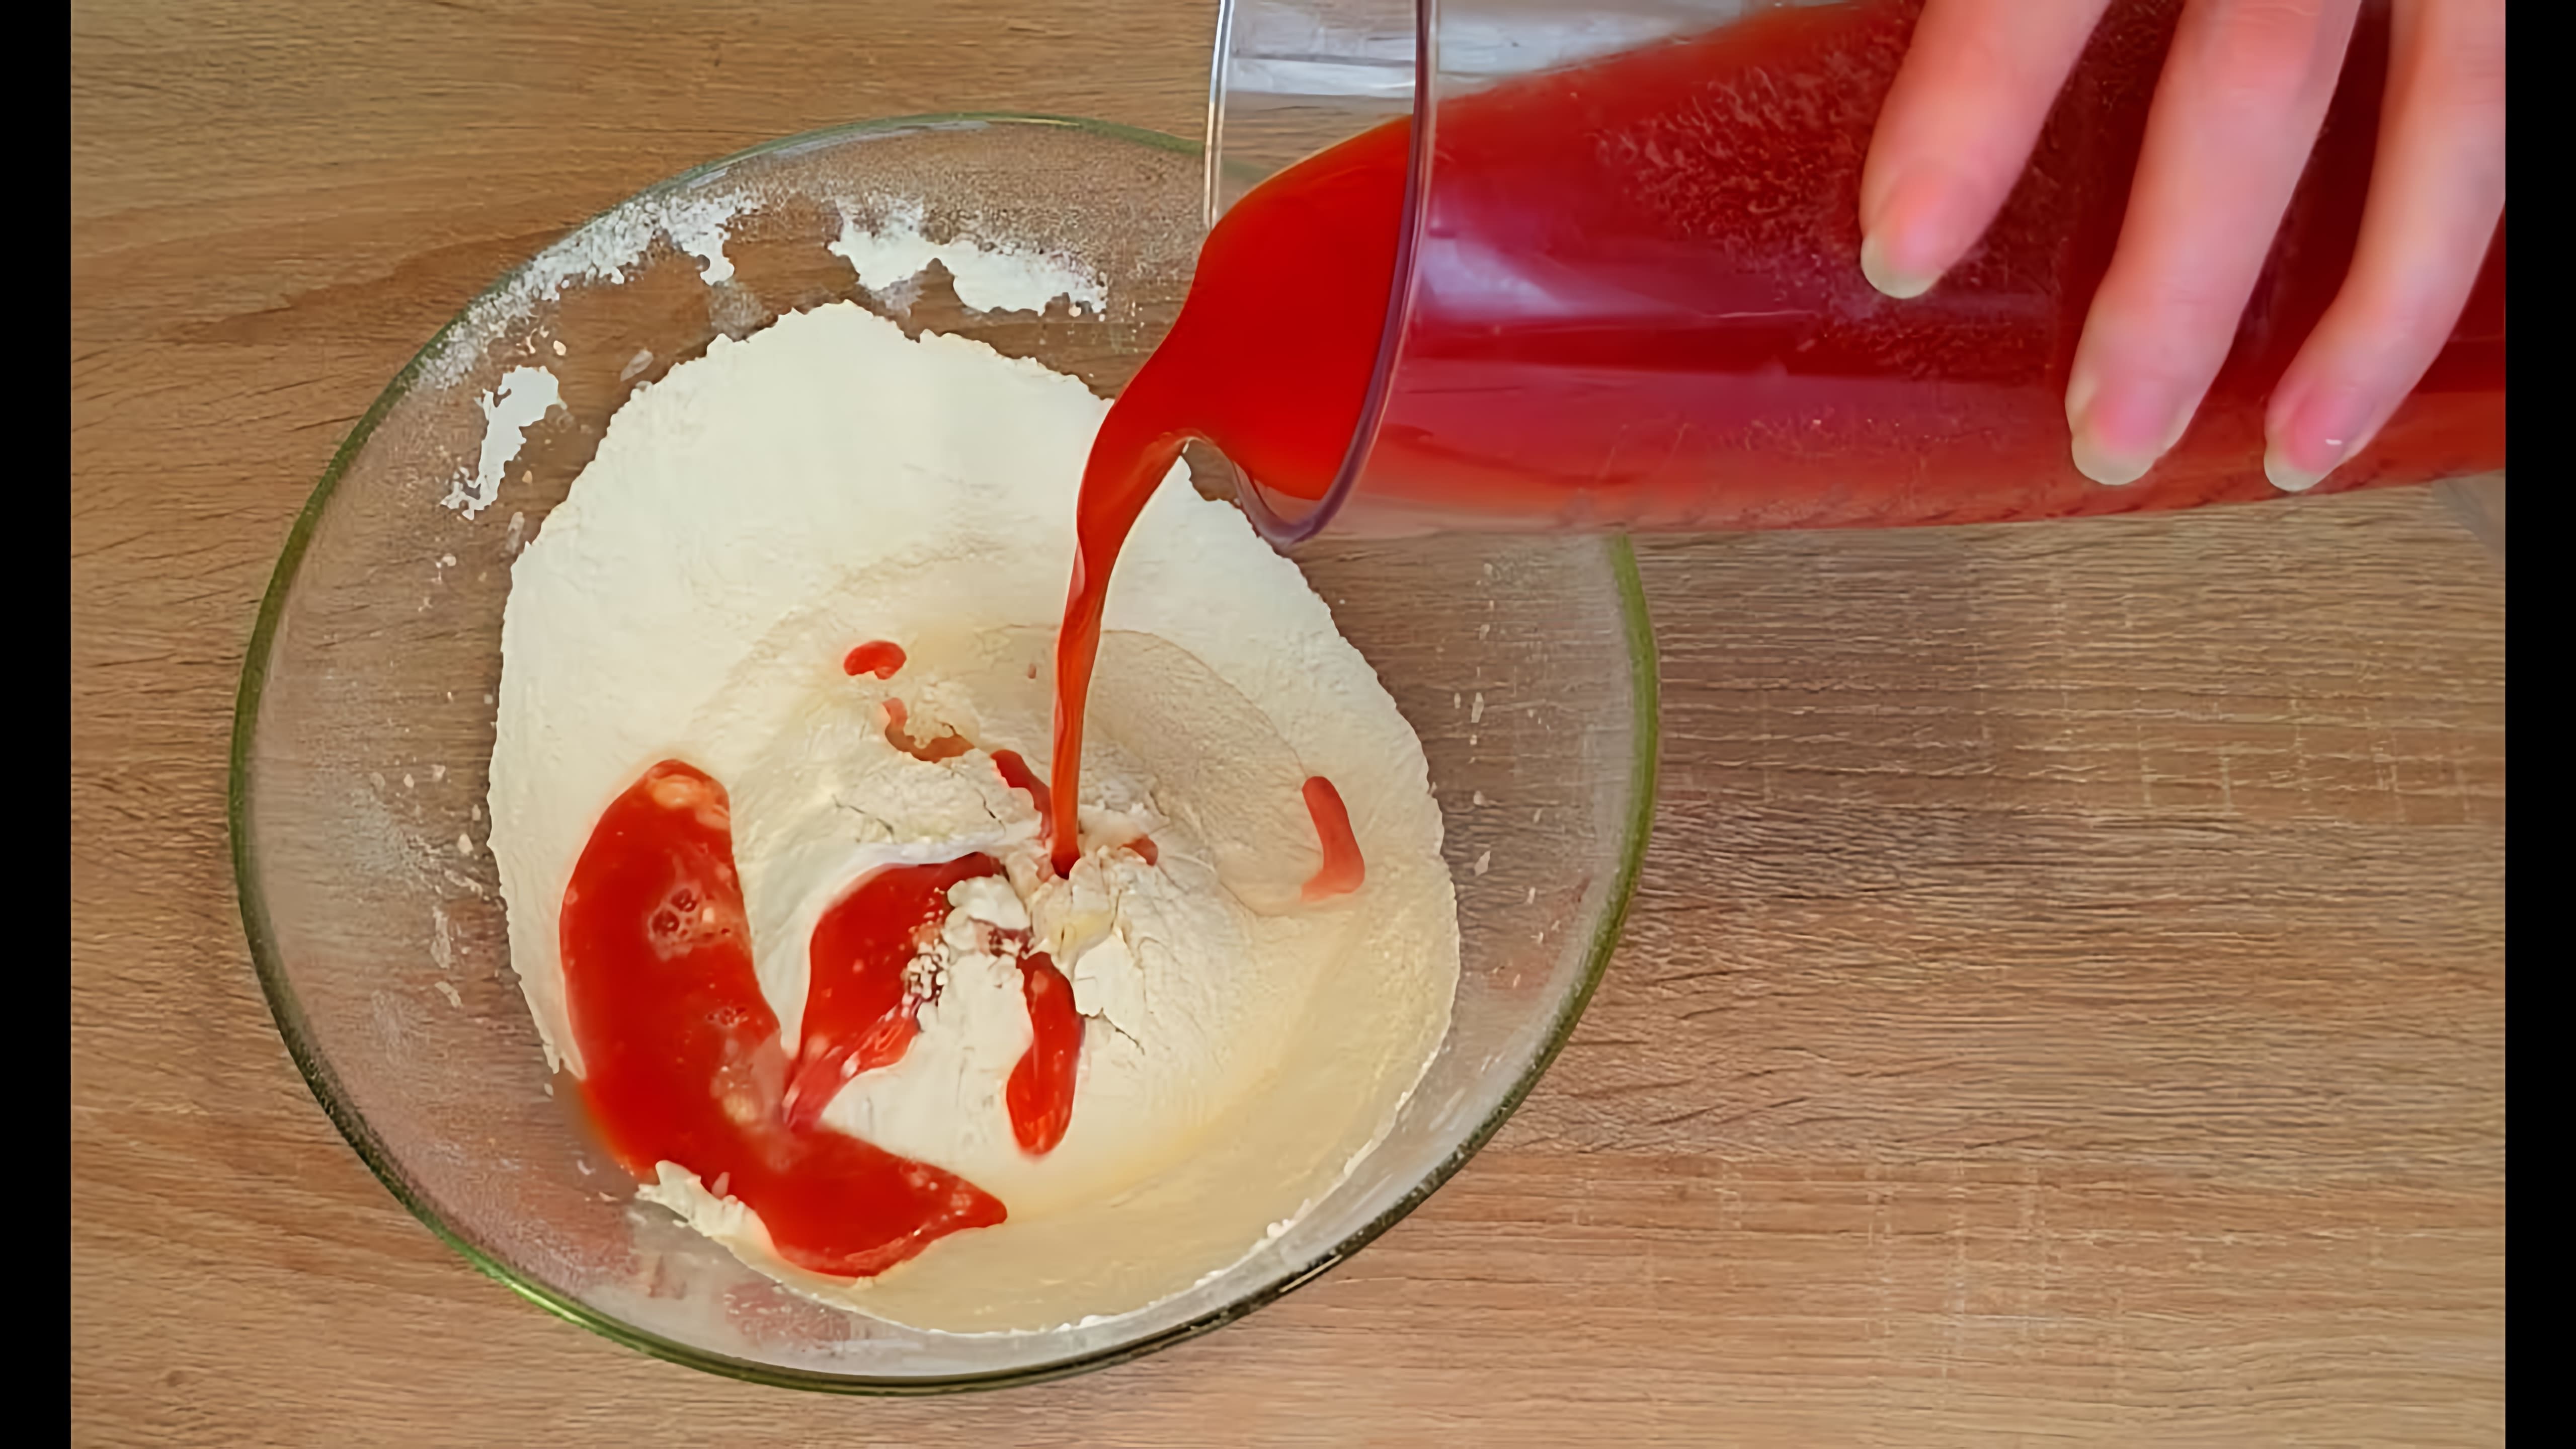 В этом видео демонстрируется рецепт приготовления томатного пирога